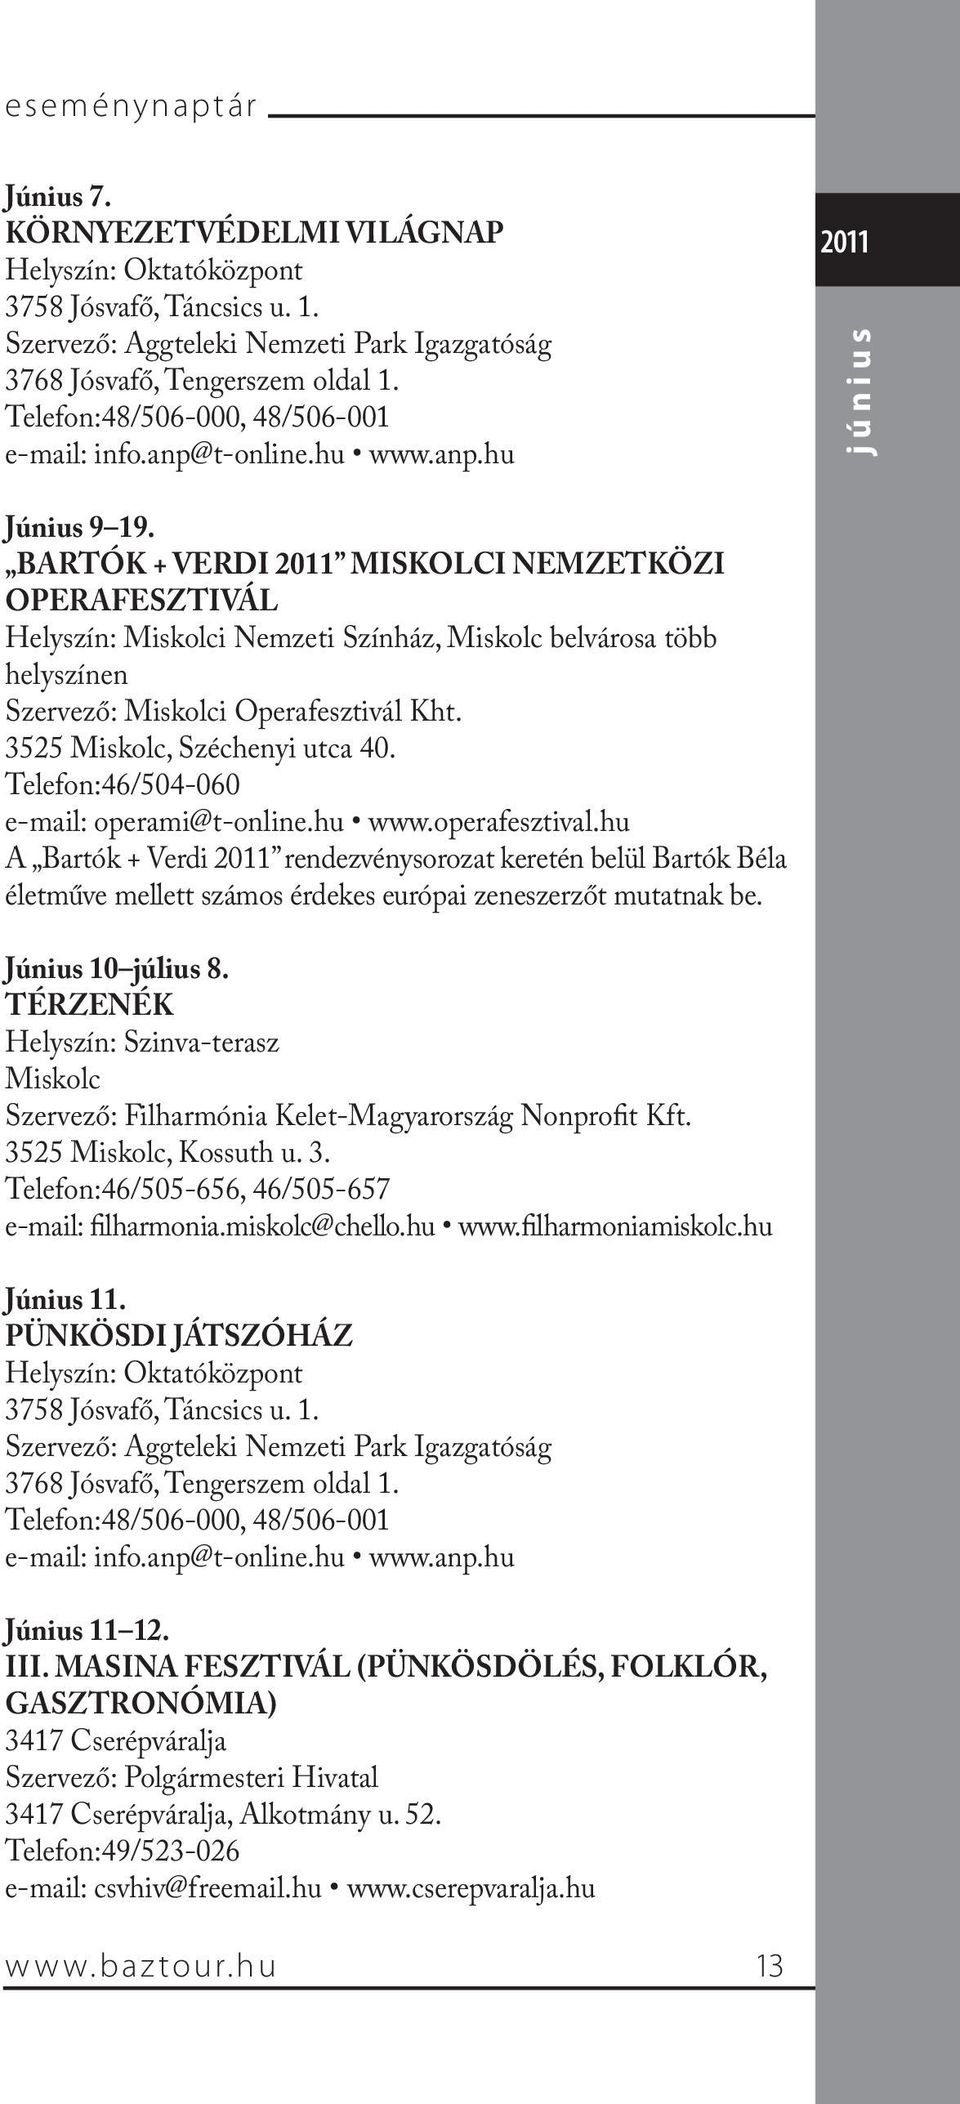 Telefon:46/504-060 e-mail: operami@t-online.hu www.operafesztival.hu A Bartók + Verdi rendezvénysorozat keretén belül Bartók Béla életműve mellett számos érdekes európai zeneszerzőt mutatnak be.